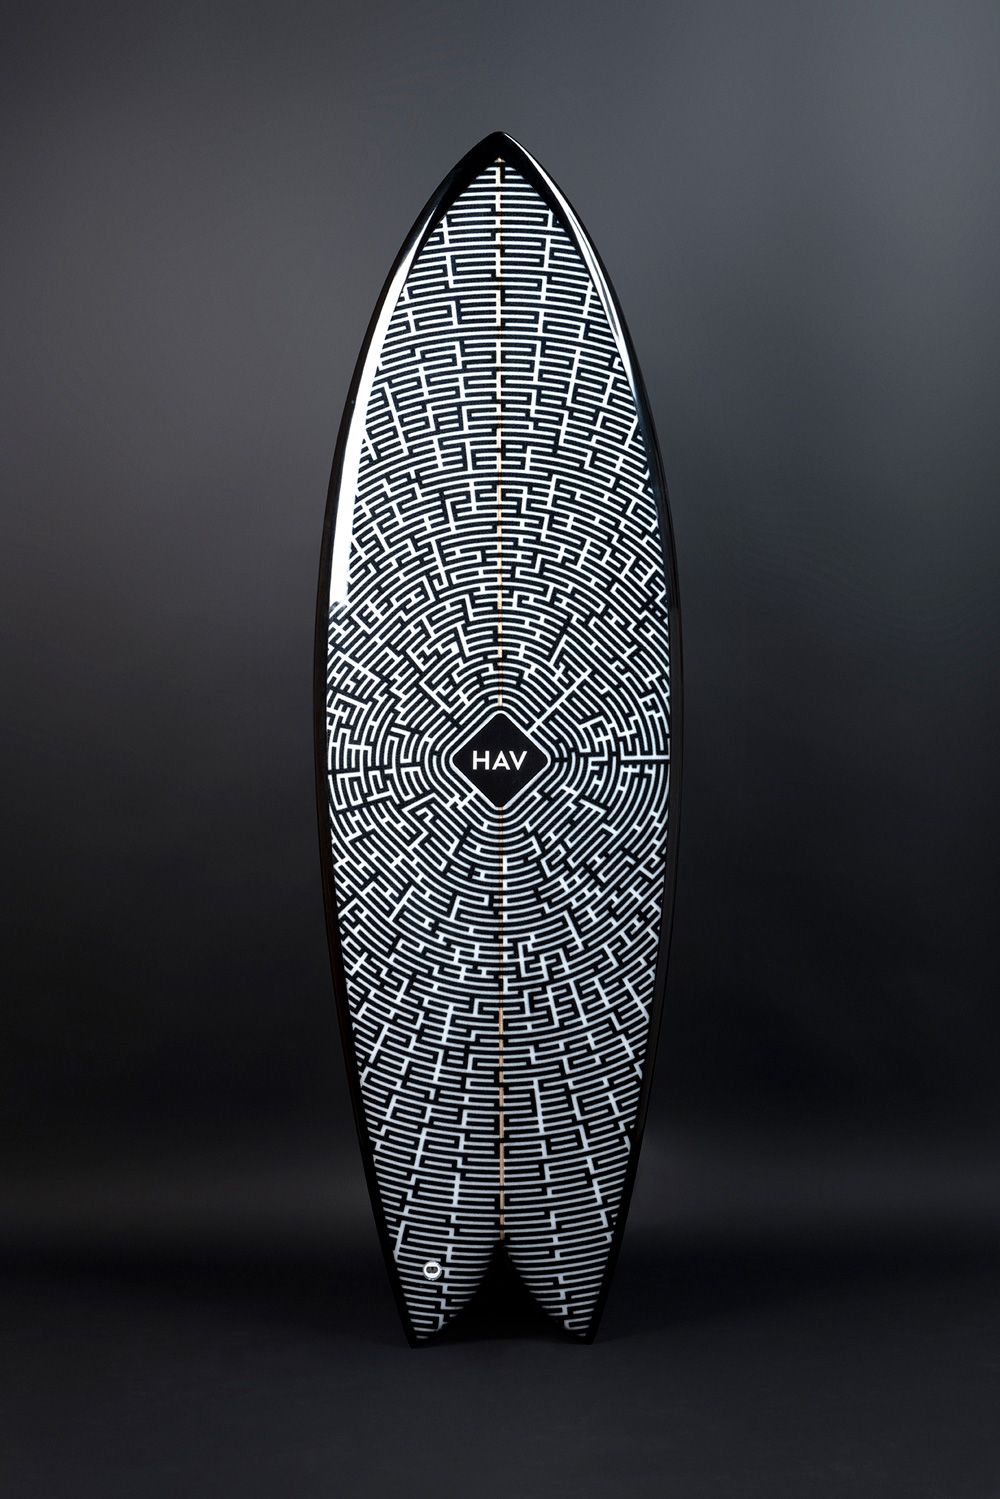 HAV Surfboard design